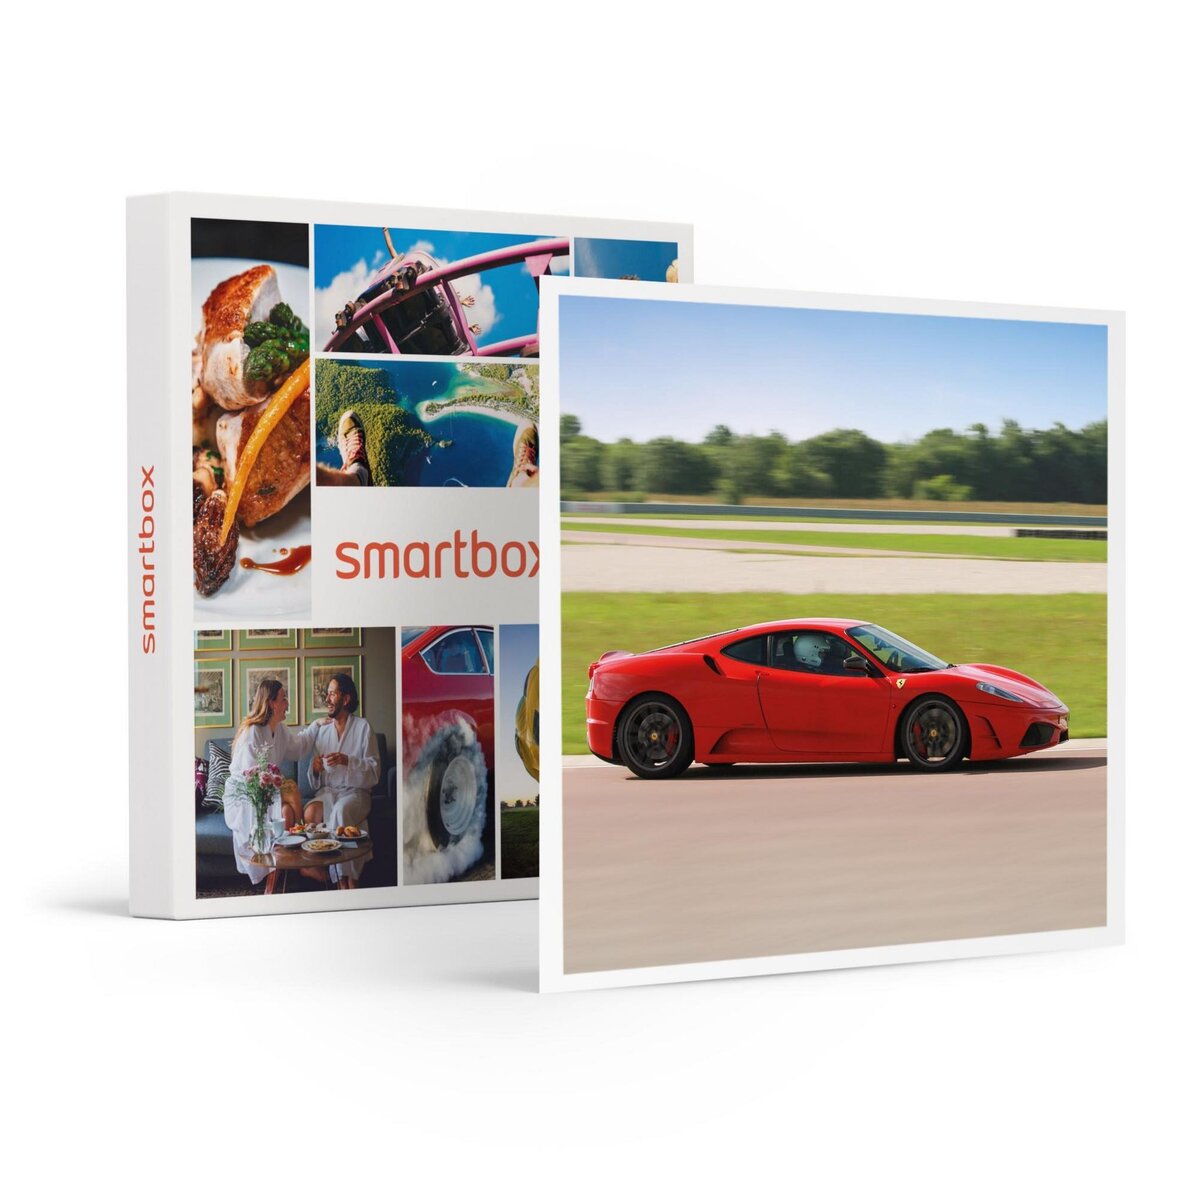 Smartbox Session de pilotage de 6 ou 7 tours de circuit au volant d'une Ferrari - Coffret Cadeau Sport & Aventure